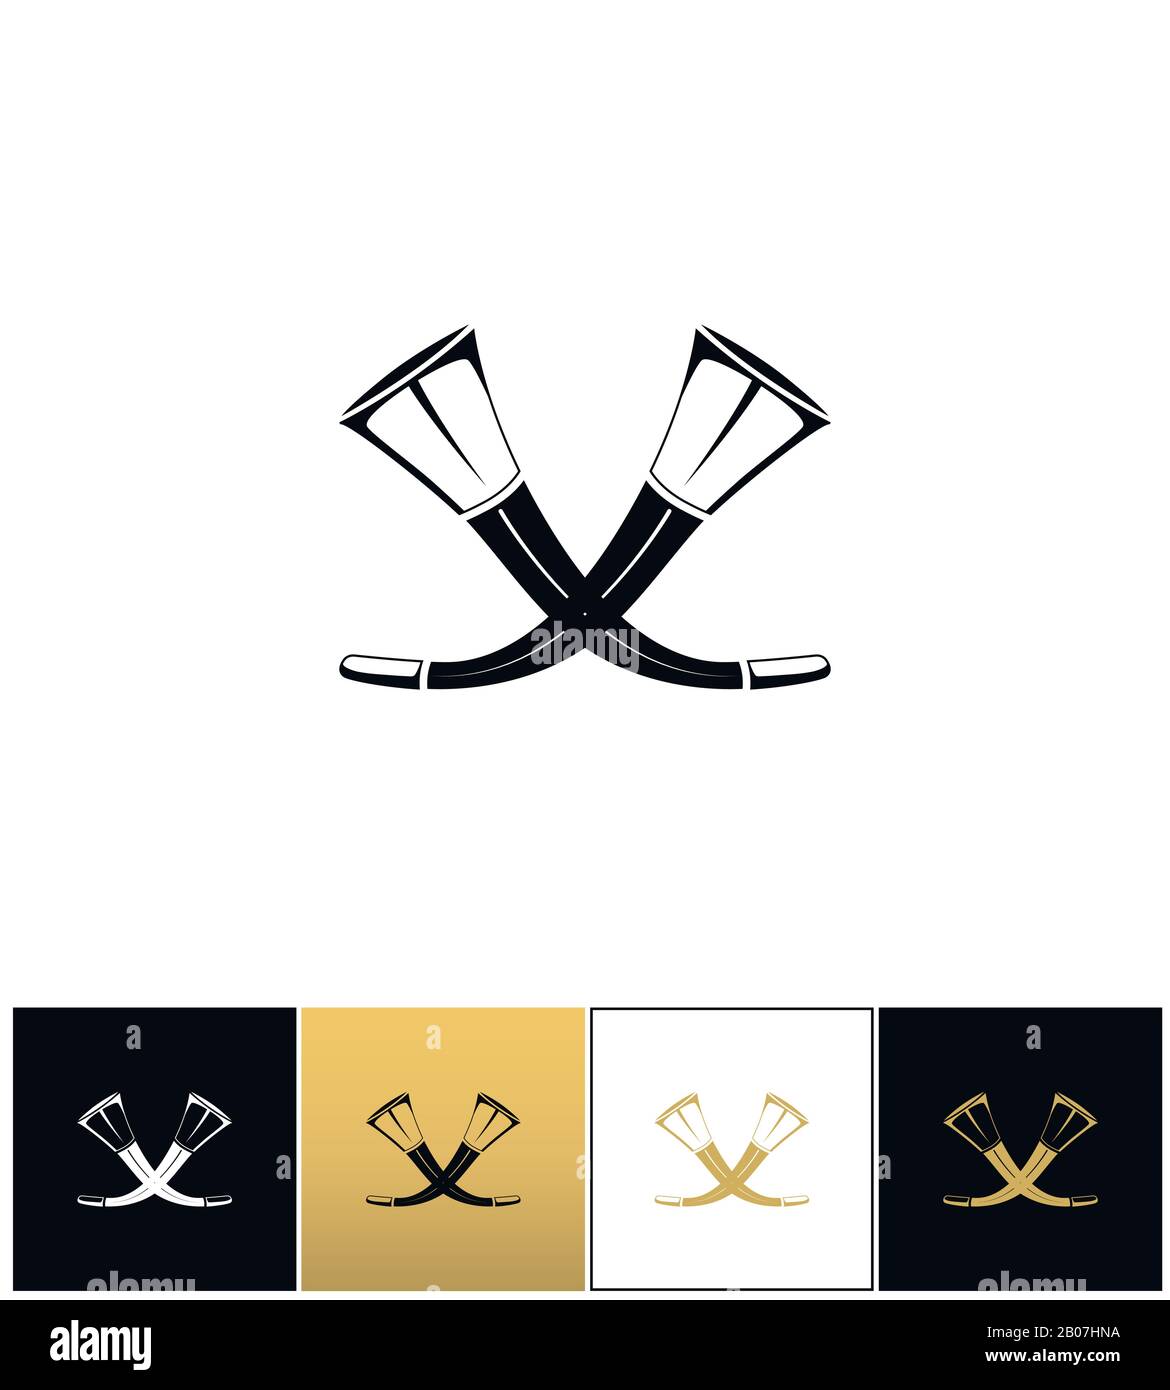 Vektorsymbol für gekreuzte Jagdhörner. Piktogramm mit gekreuzten Jagdhörnern auf schwarzem, weißem und goldenem Hintergrund Stock Vektor